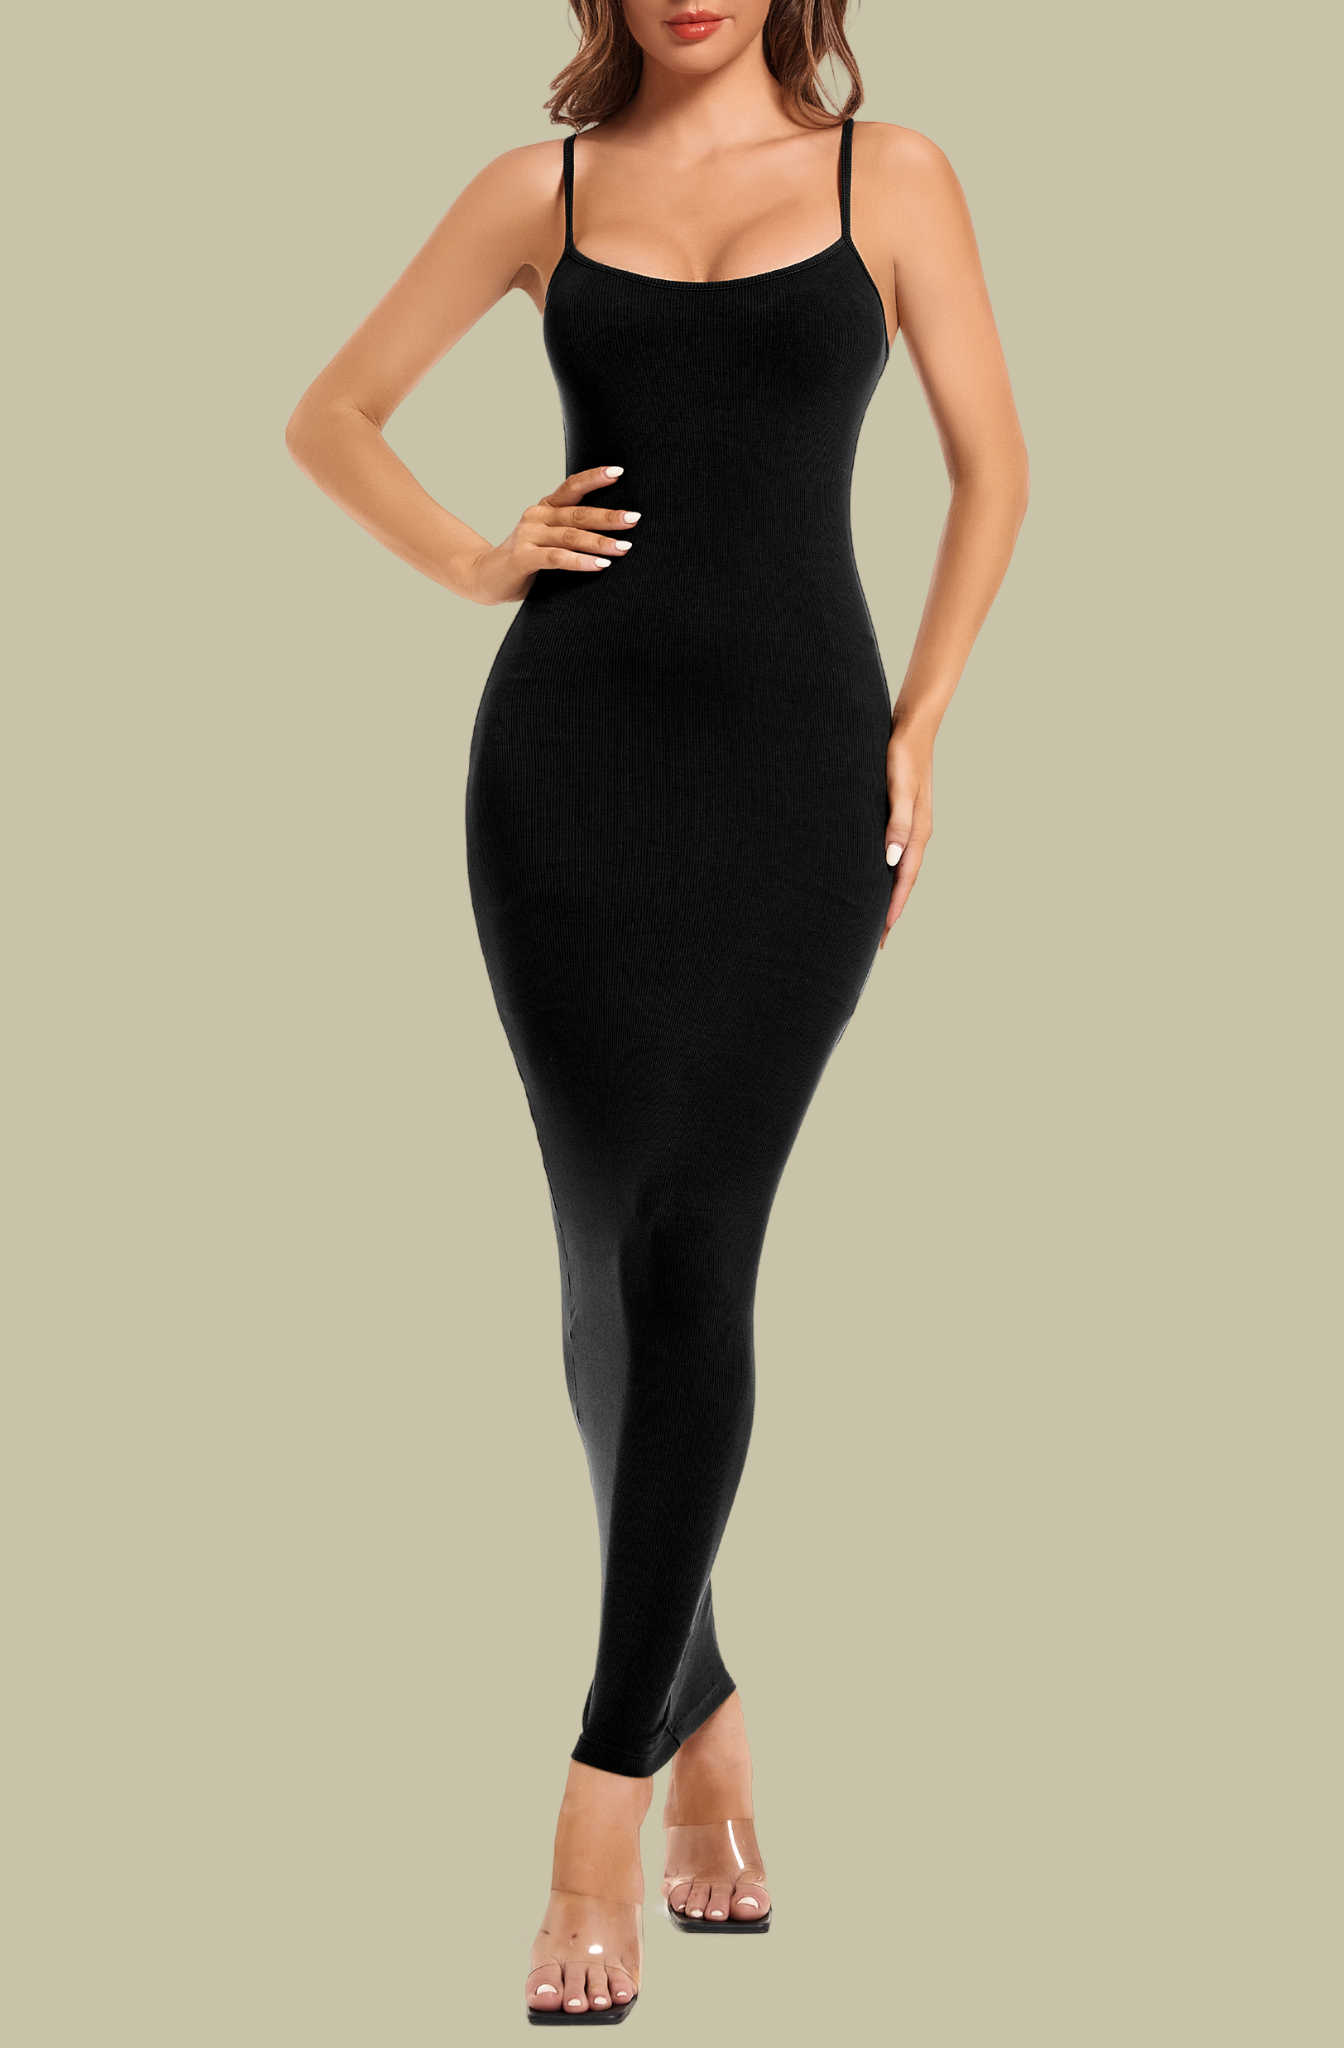 A dreamy silhouette  Shapewear dress, Women's shapewear, Shapewear